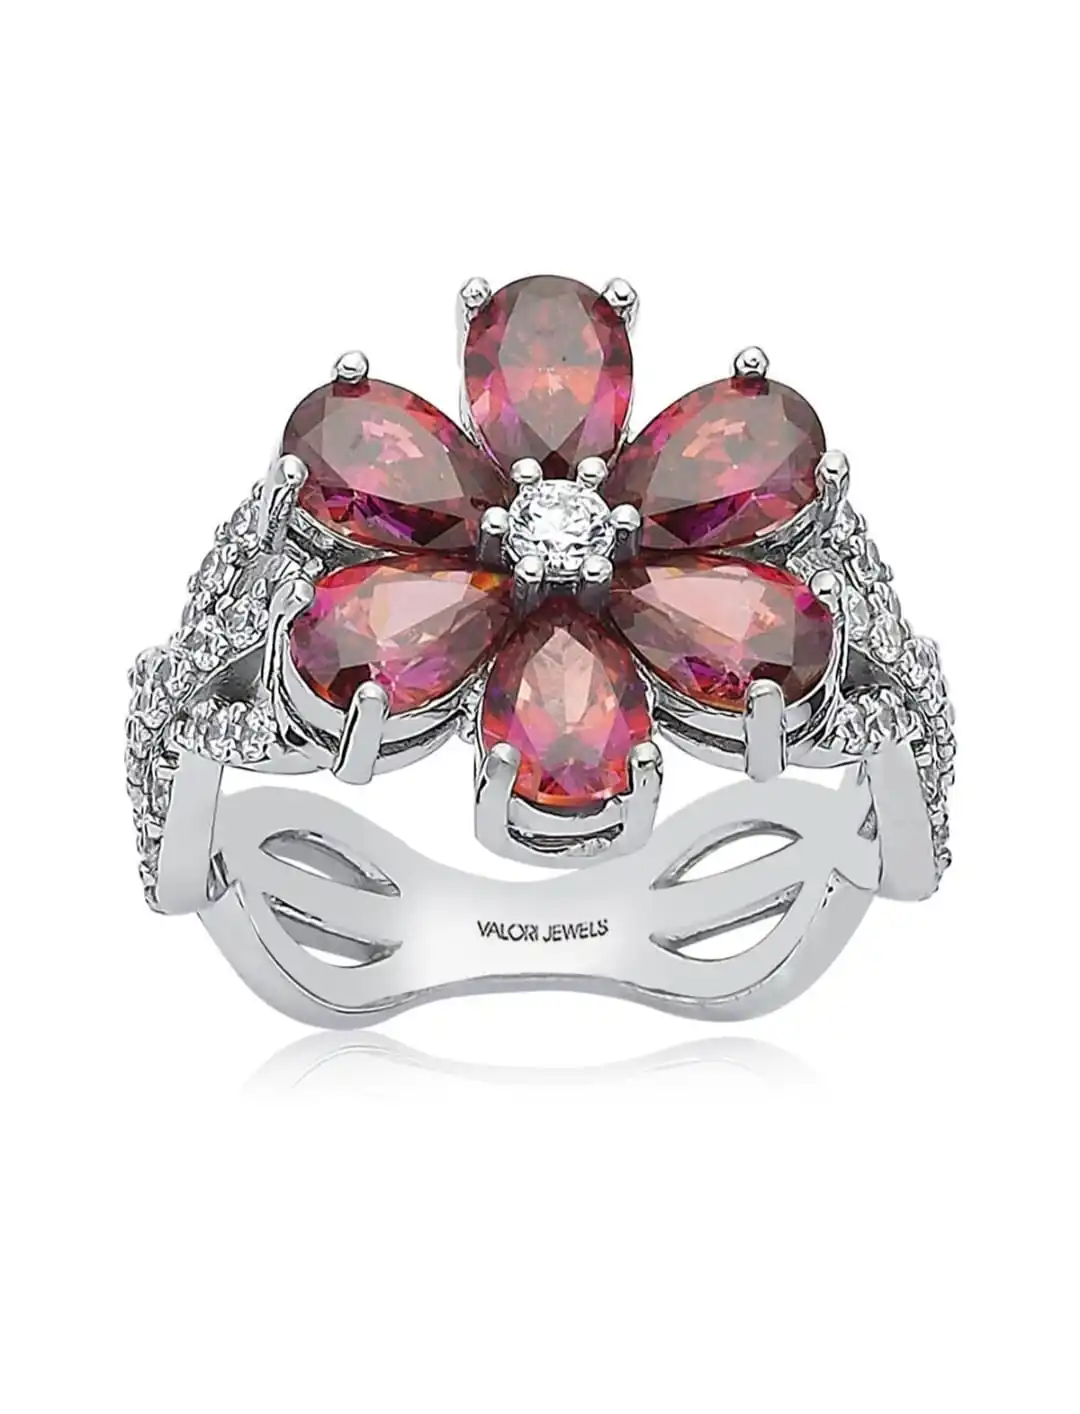 

Valori Драгоценности 2 карат Swarovski циркониевое кольцо Красного капля камень, серьги-подвески с цветочным украшением из чистого кольцо.